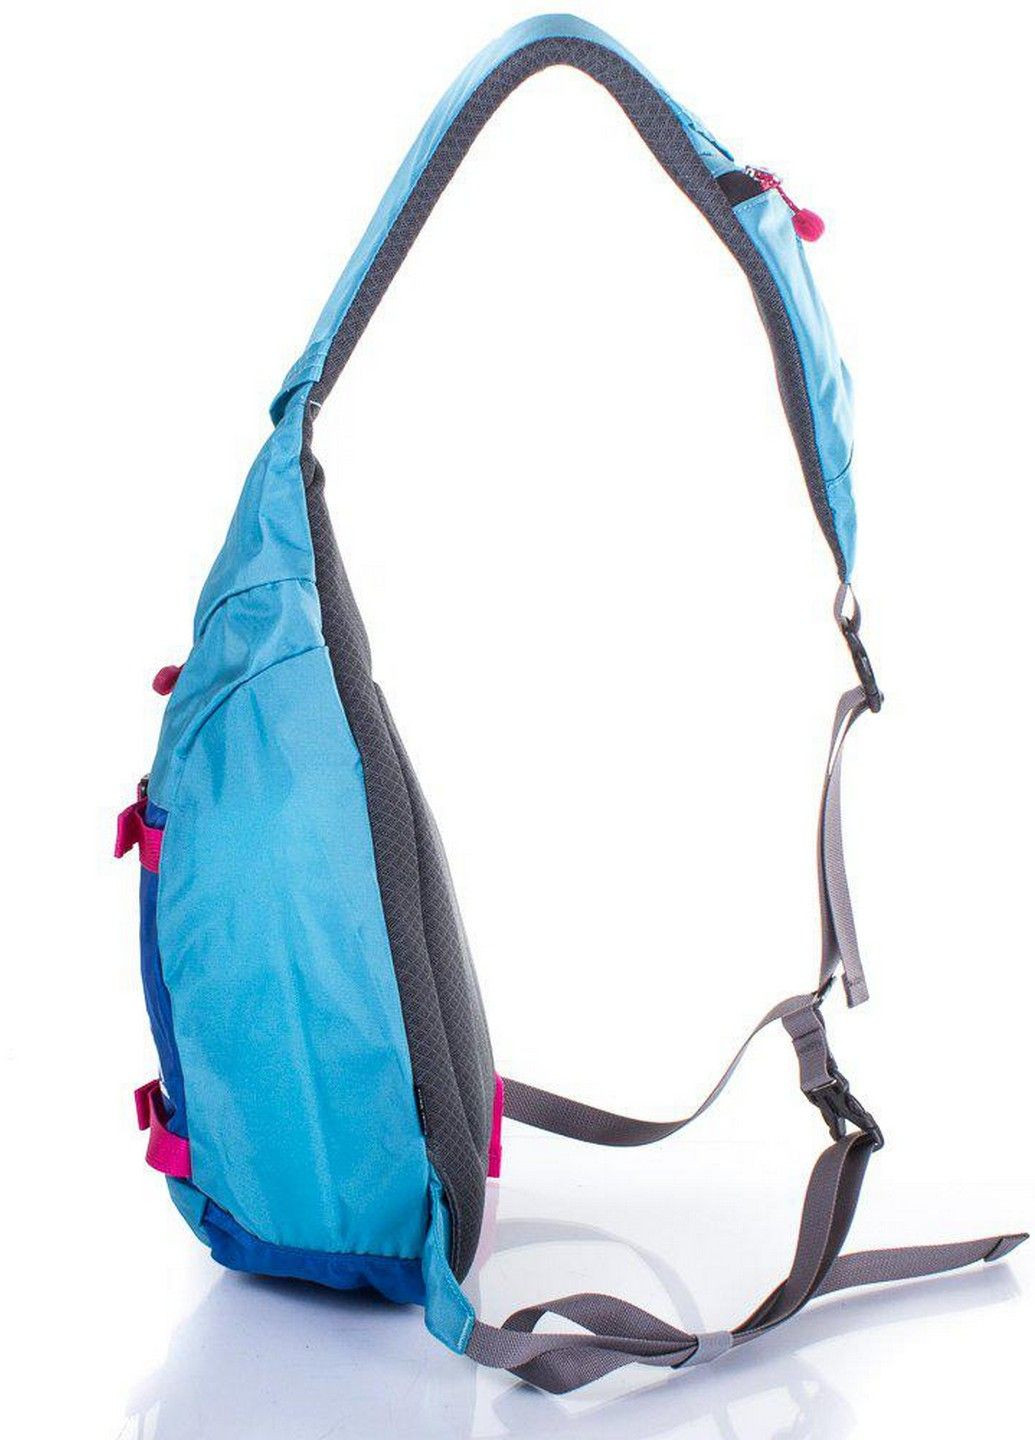 Спортивный рюкзак женский 24х40х12 см Onepolar (202298691)